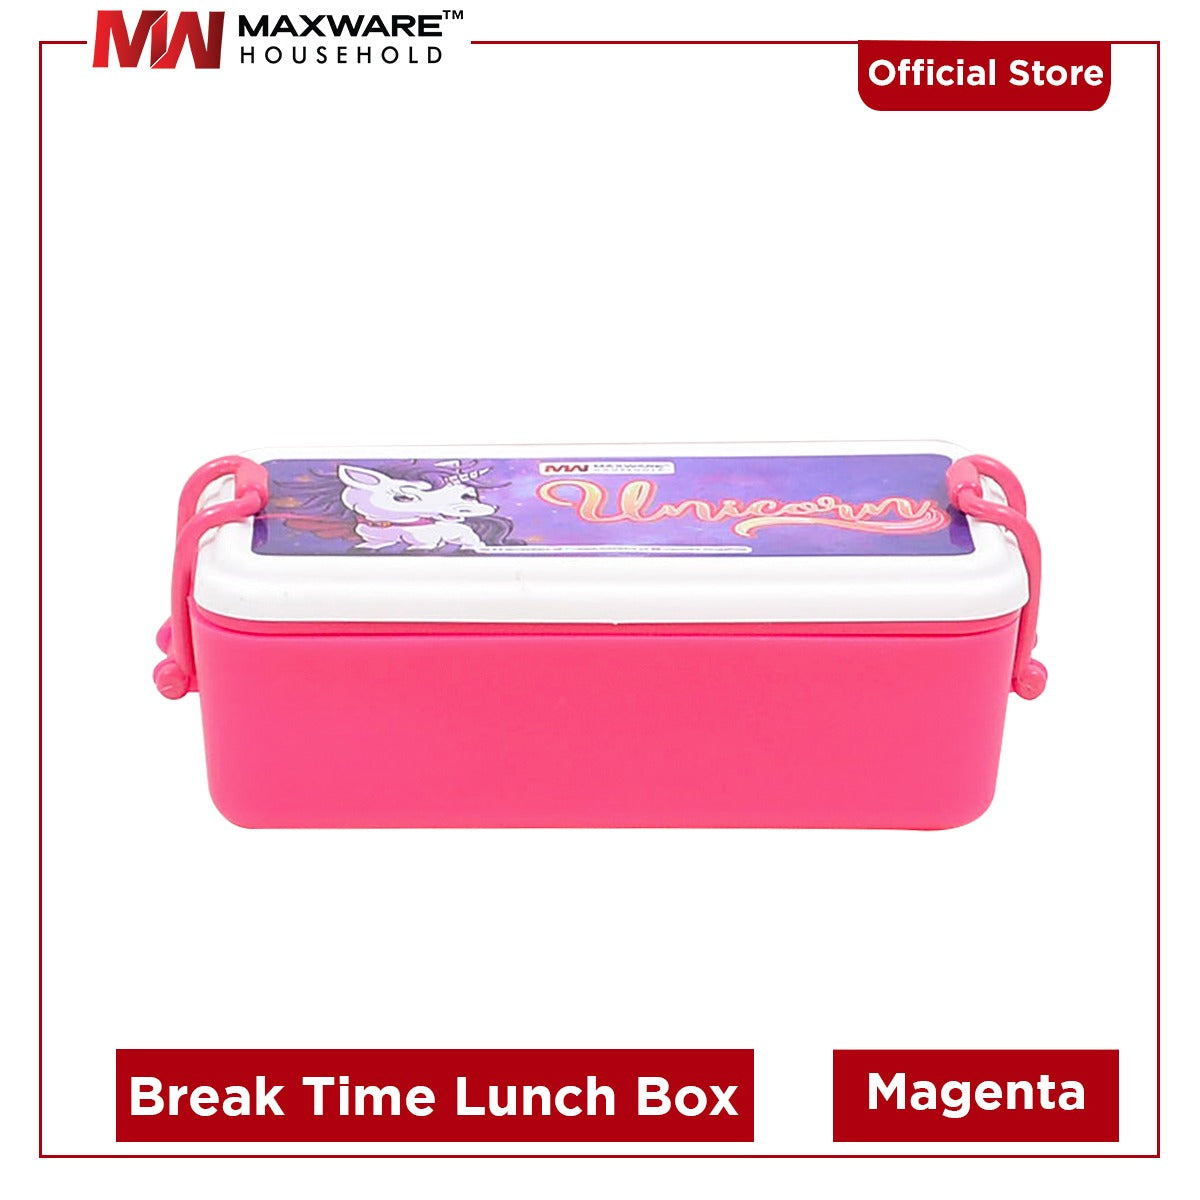 Break time lunch box (700 ml)